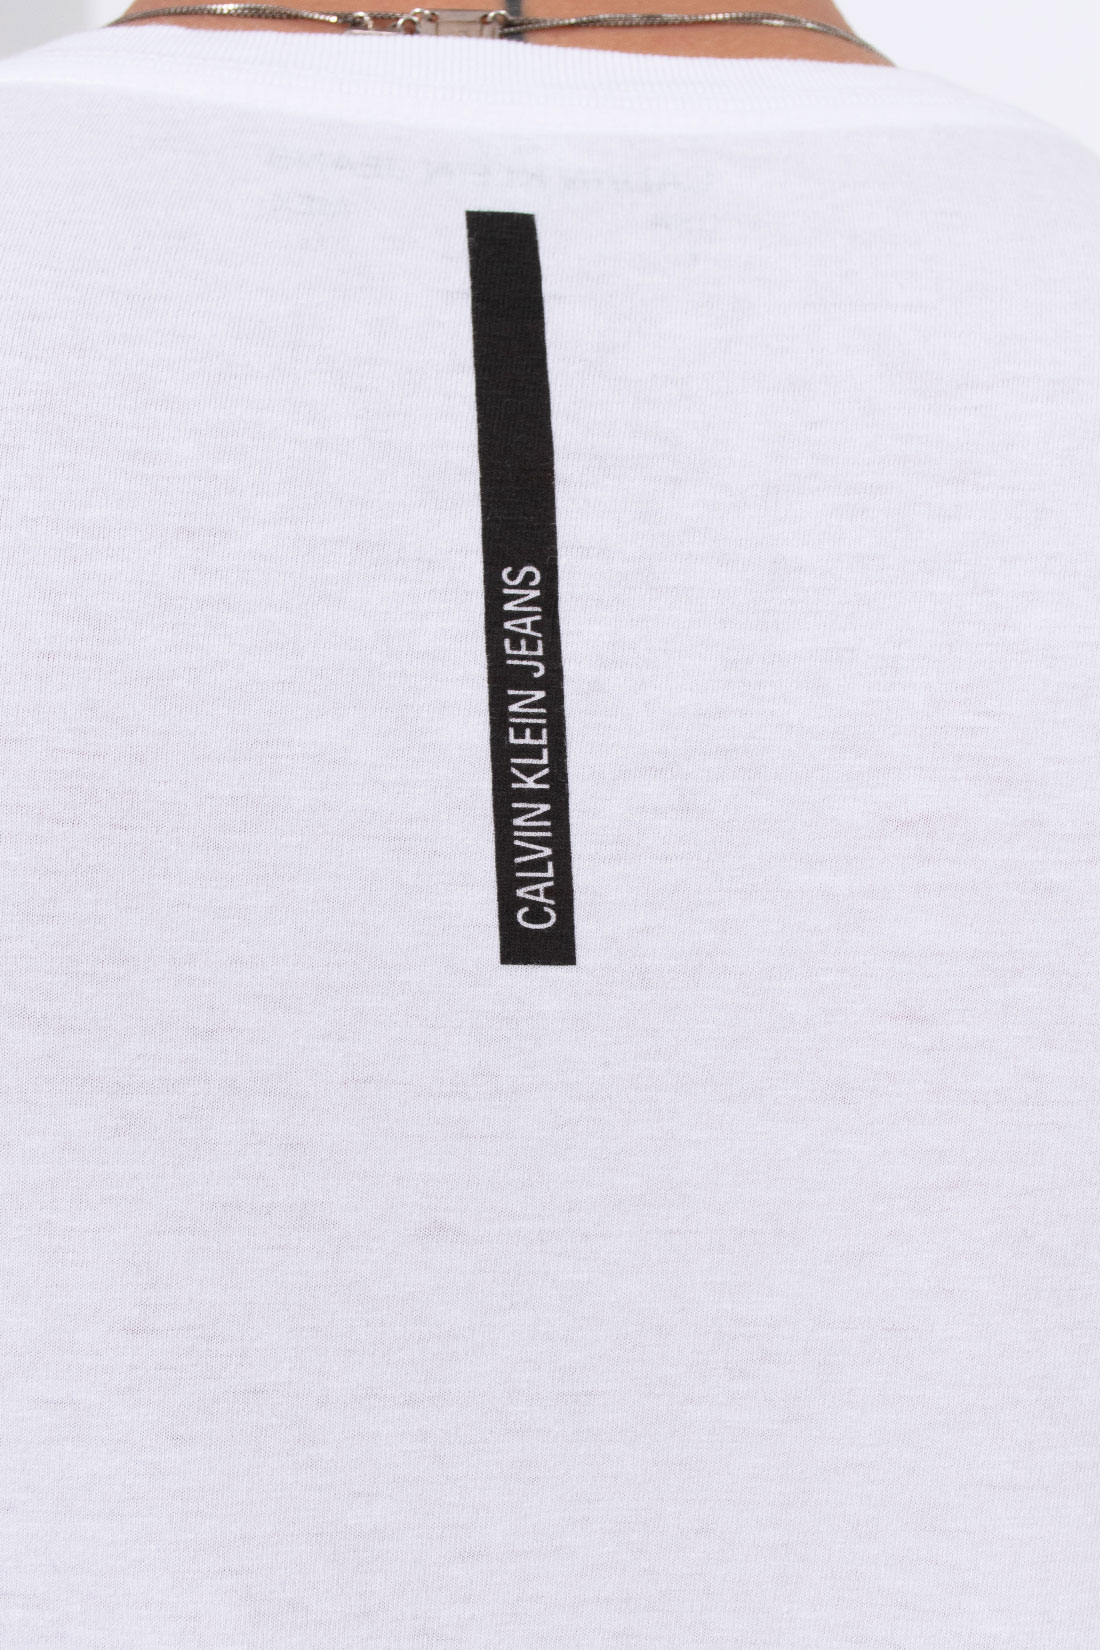 Camiseta Mc Calvin Klein Logo Basico